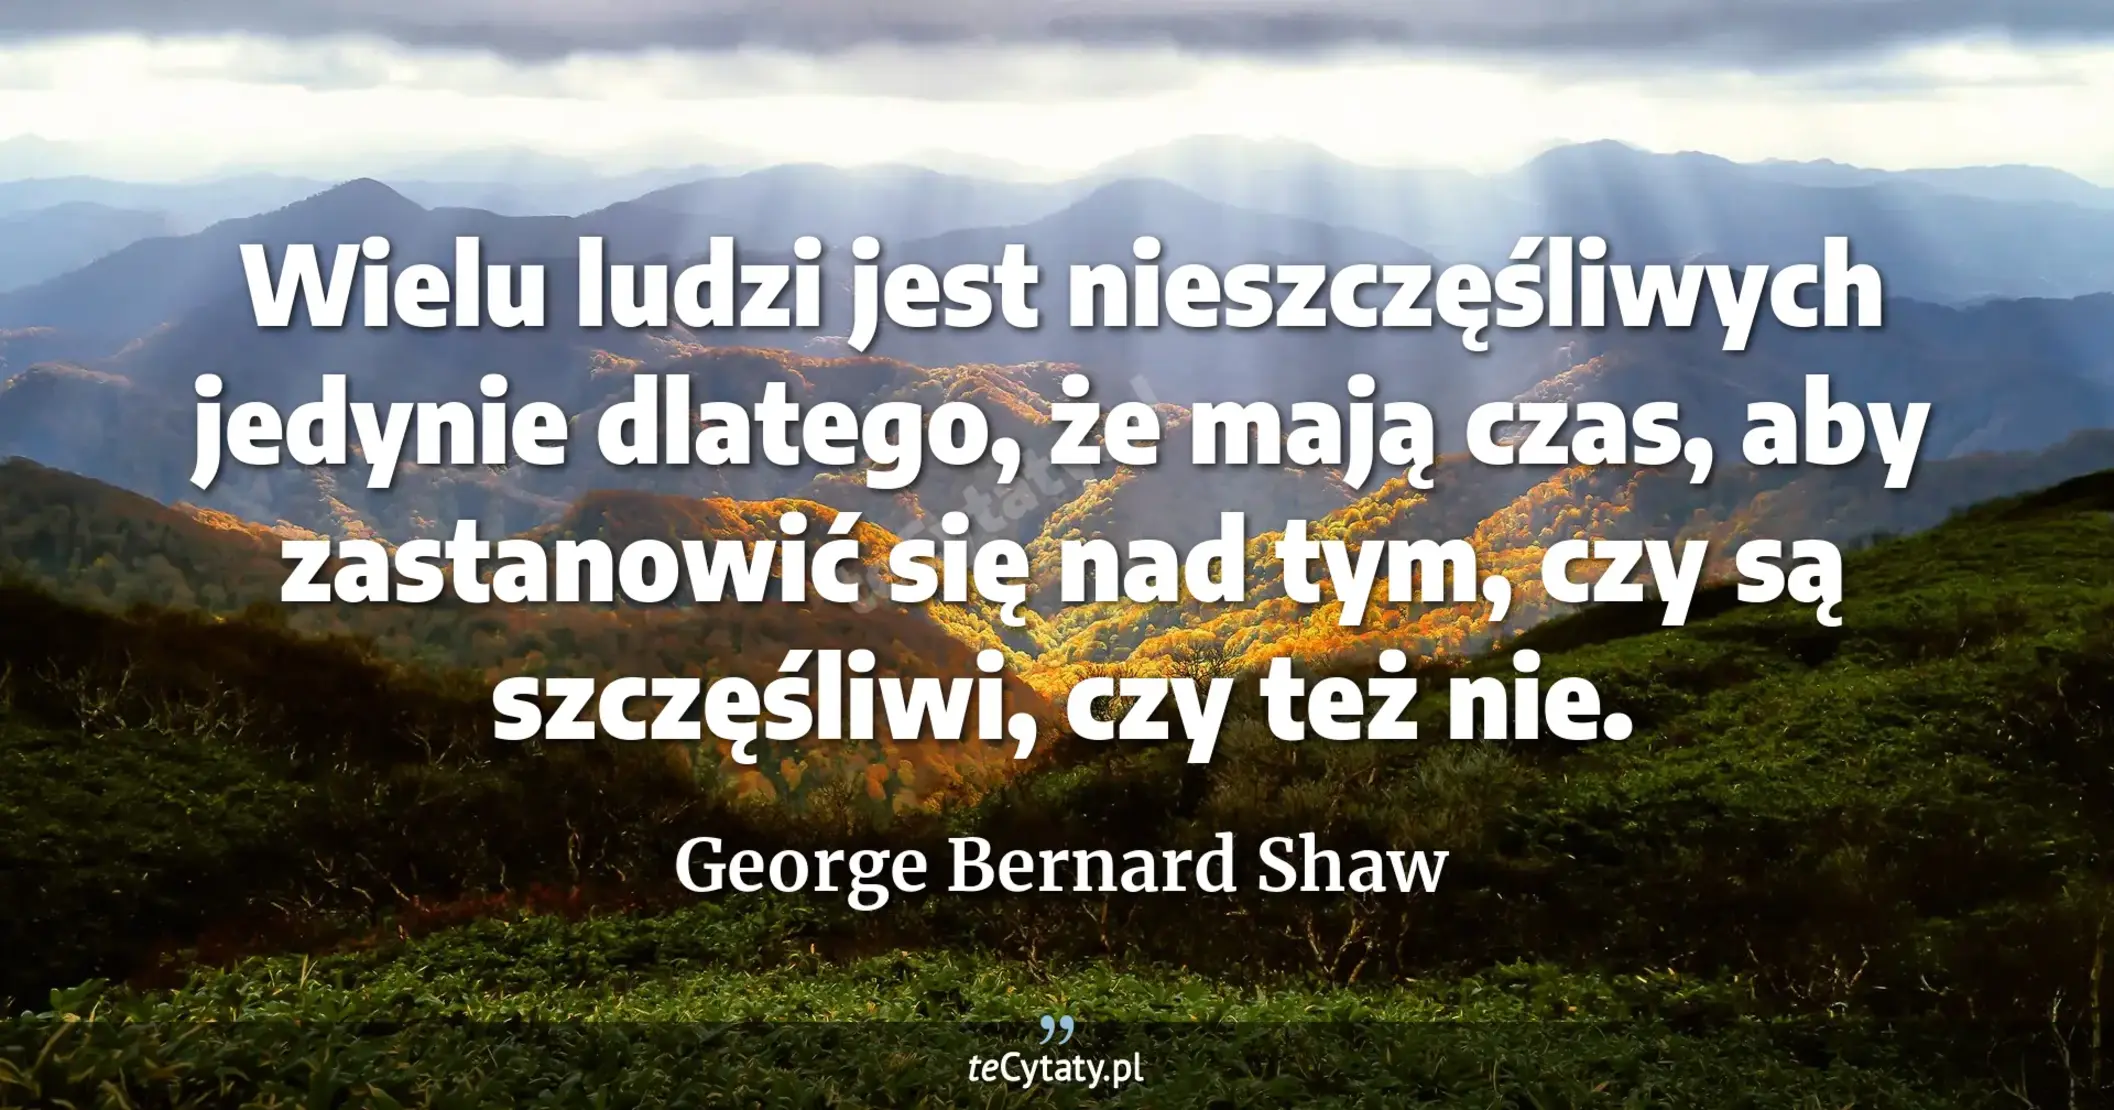 Wielu ludzi jest nieszczęśliwych jedynie dlatego, że mają czas, aby zastanowić się nad tym, czy są szczęśliwi, czy też nie. - George Bernard Shaw